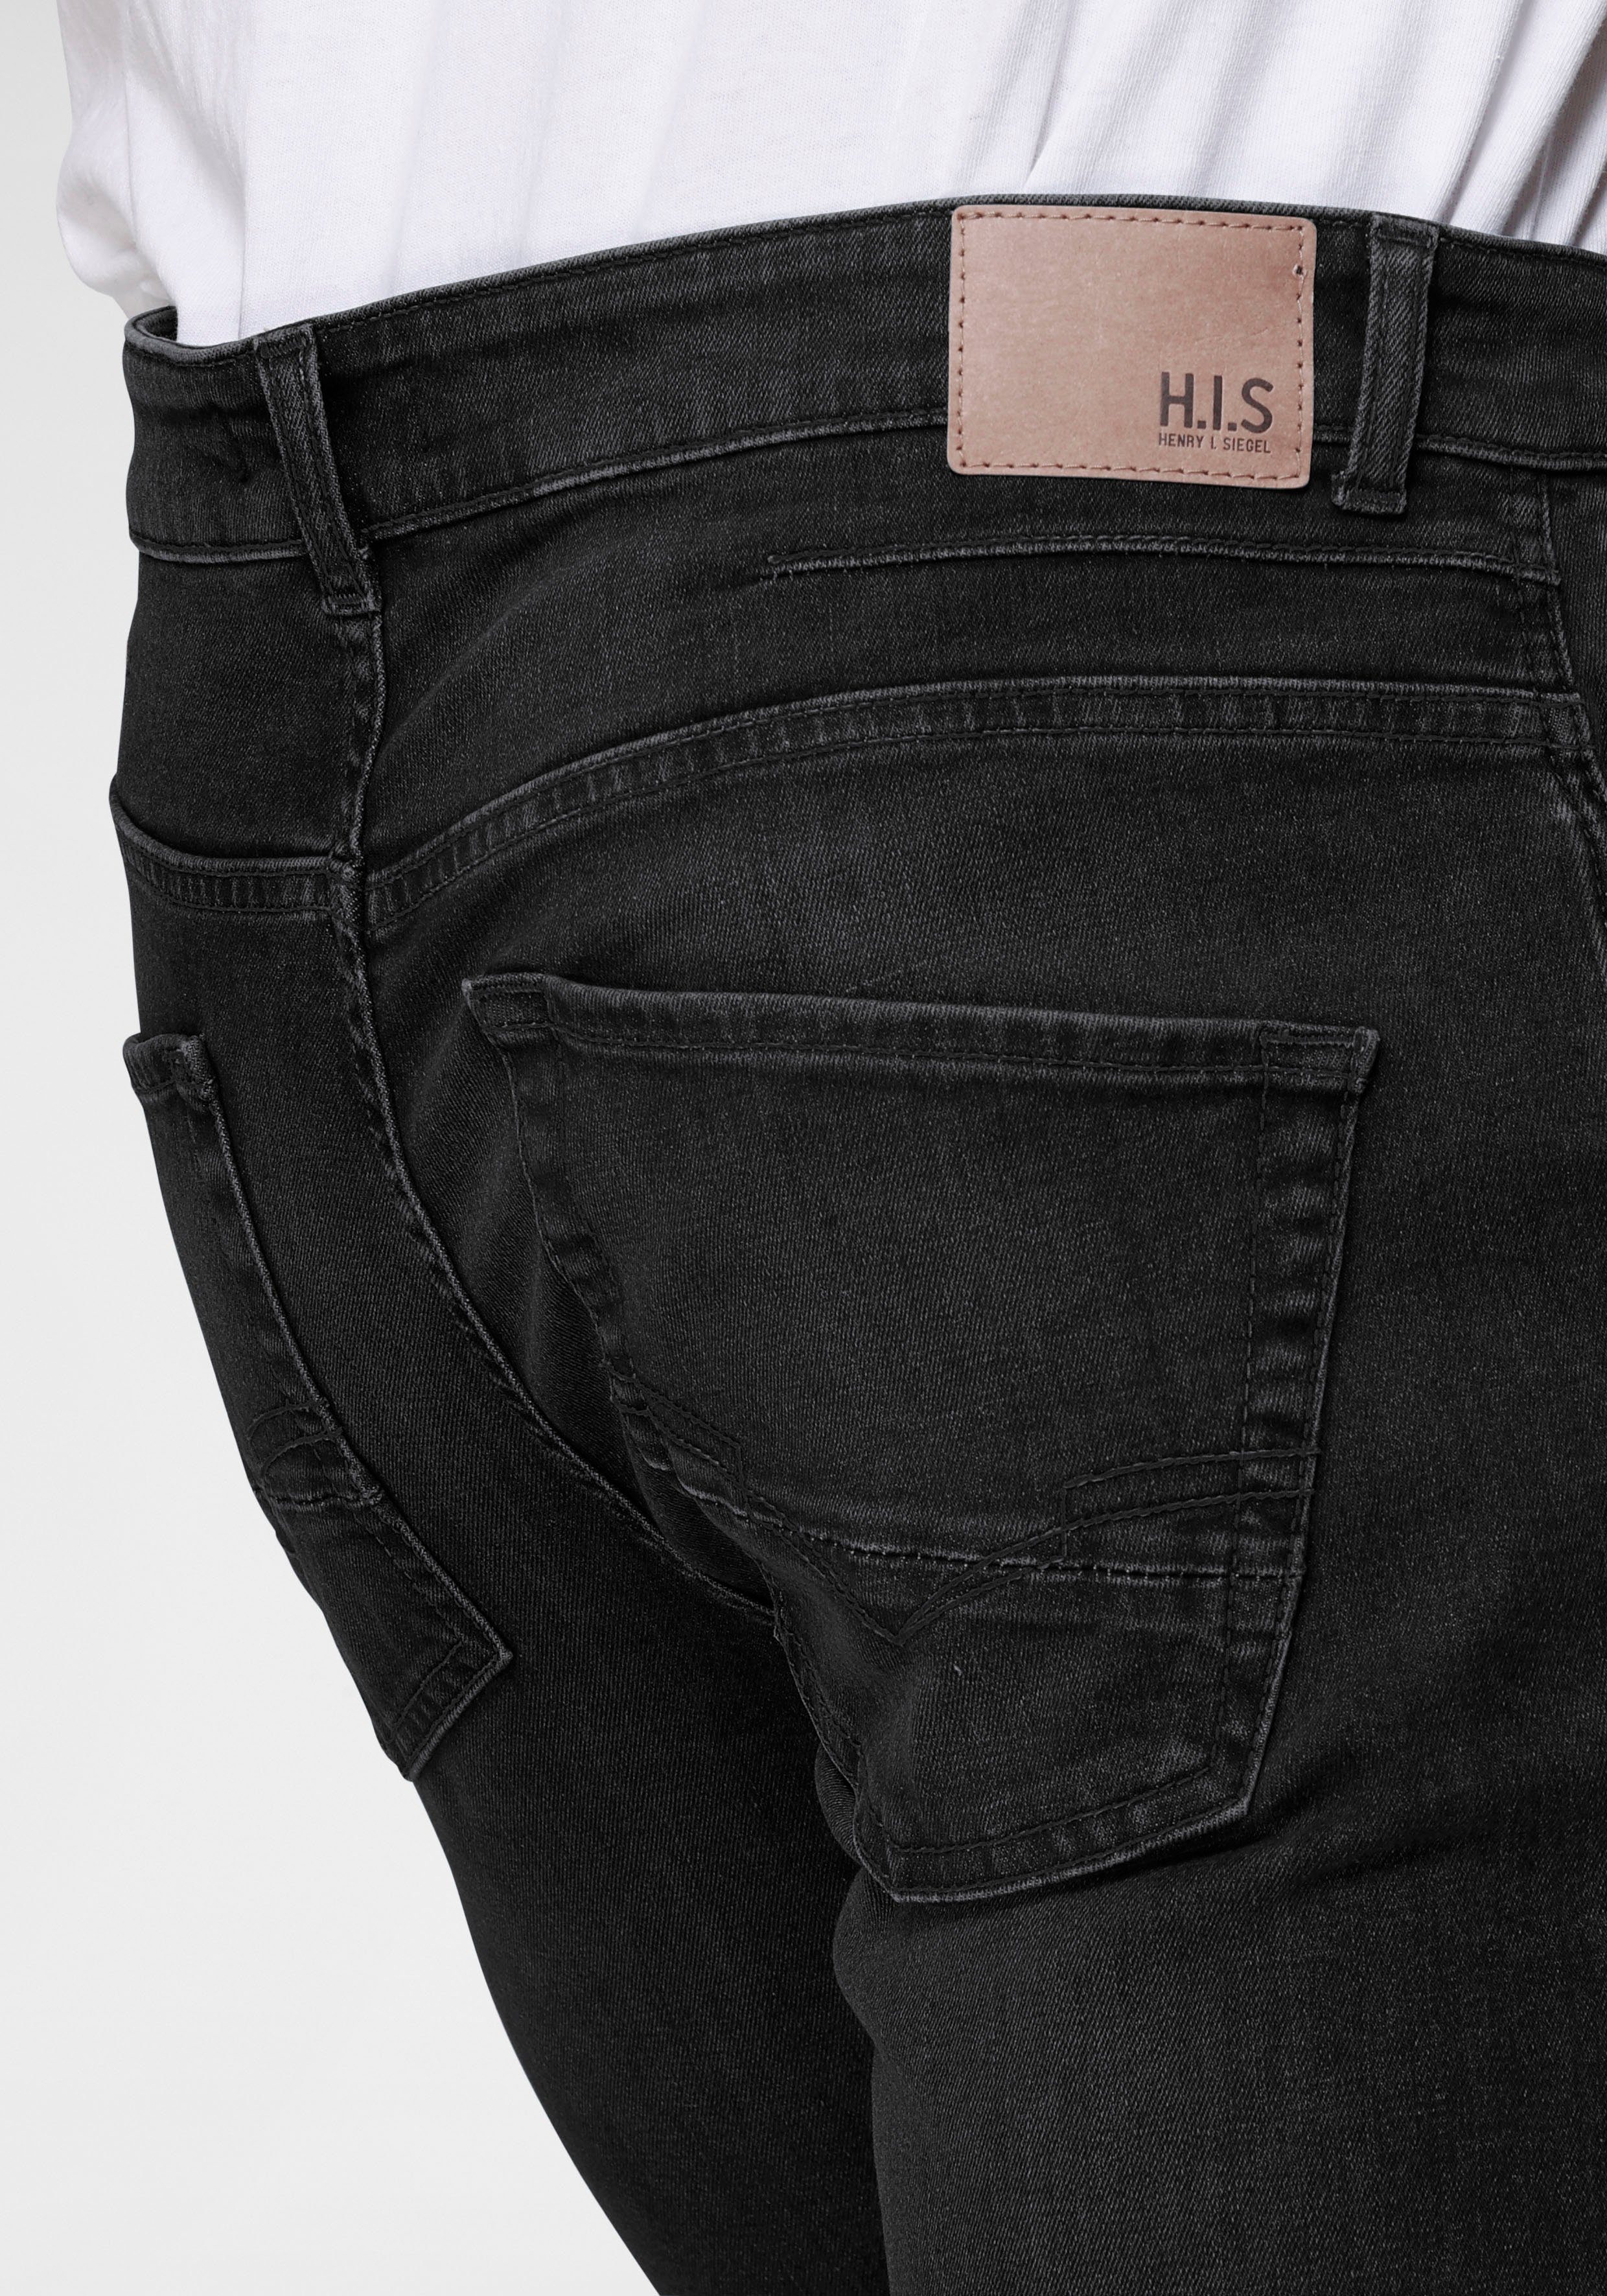 H.I.S durch Wash wassersparende Ozon Ökologische, DALE black-used Produktion Straight-Jeans